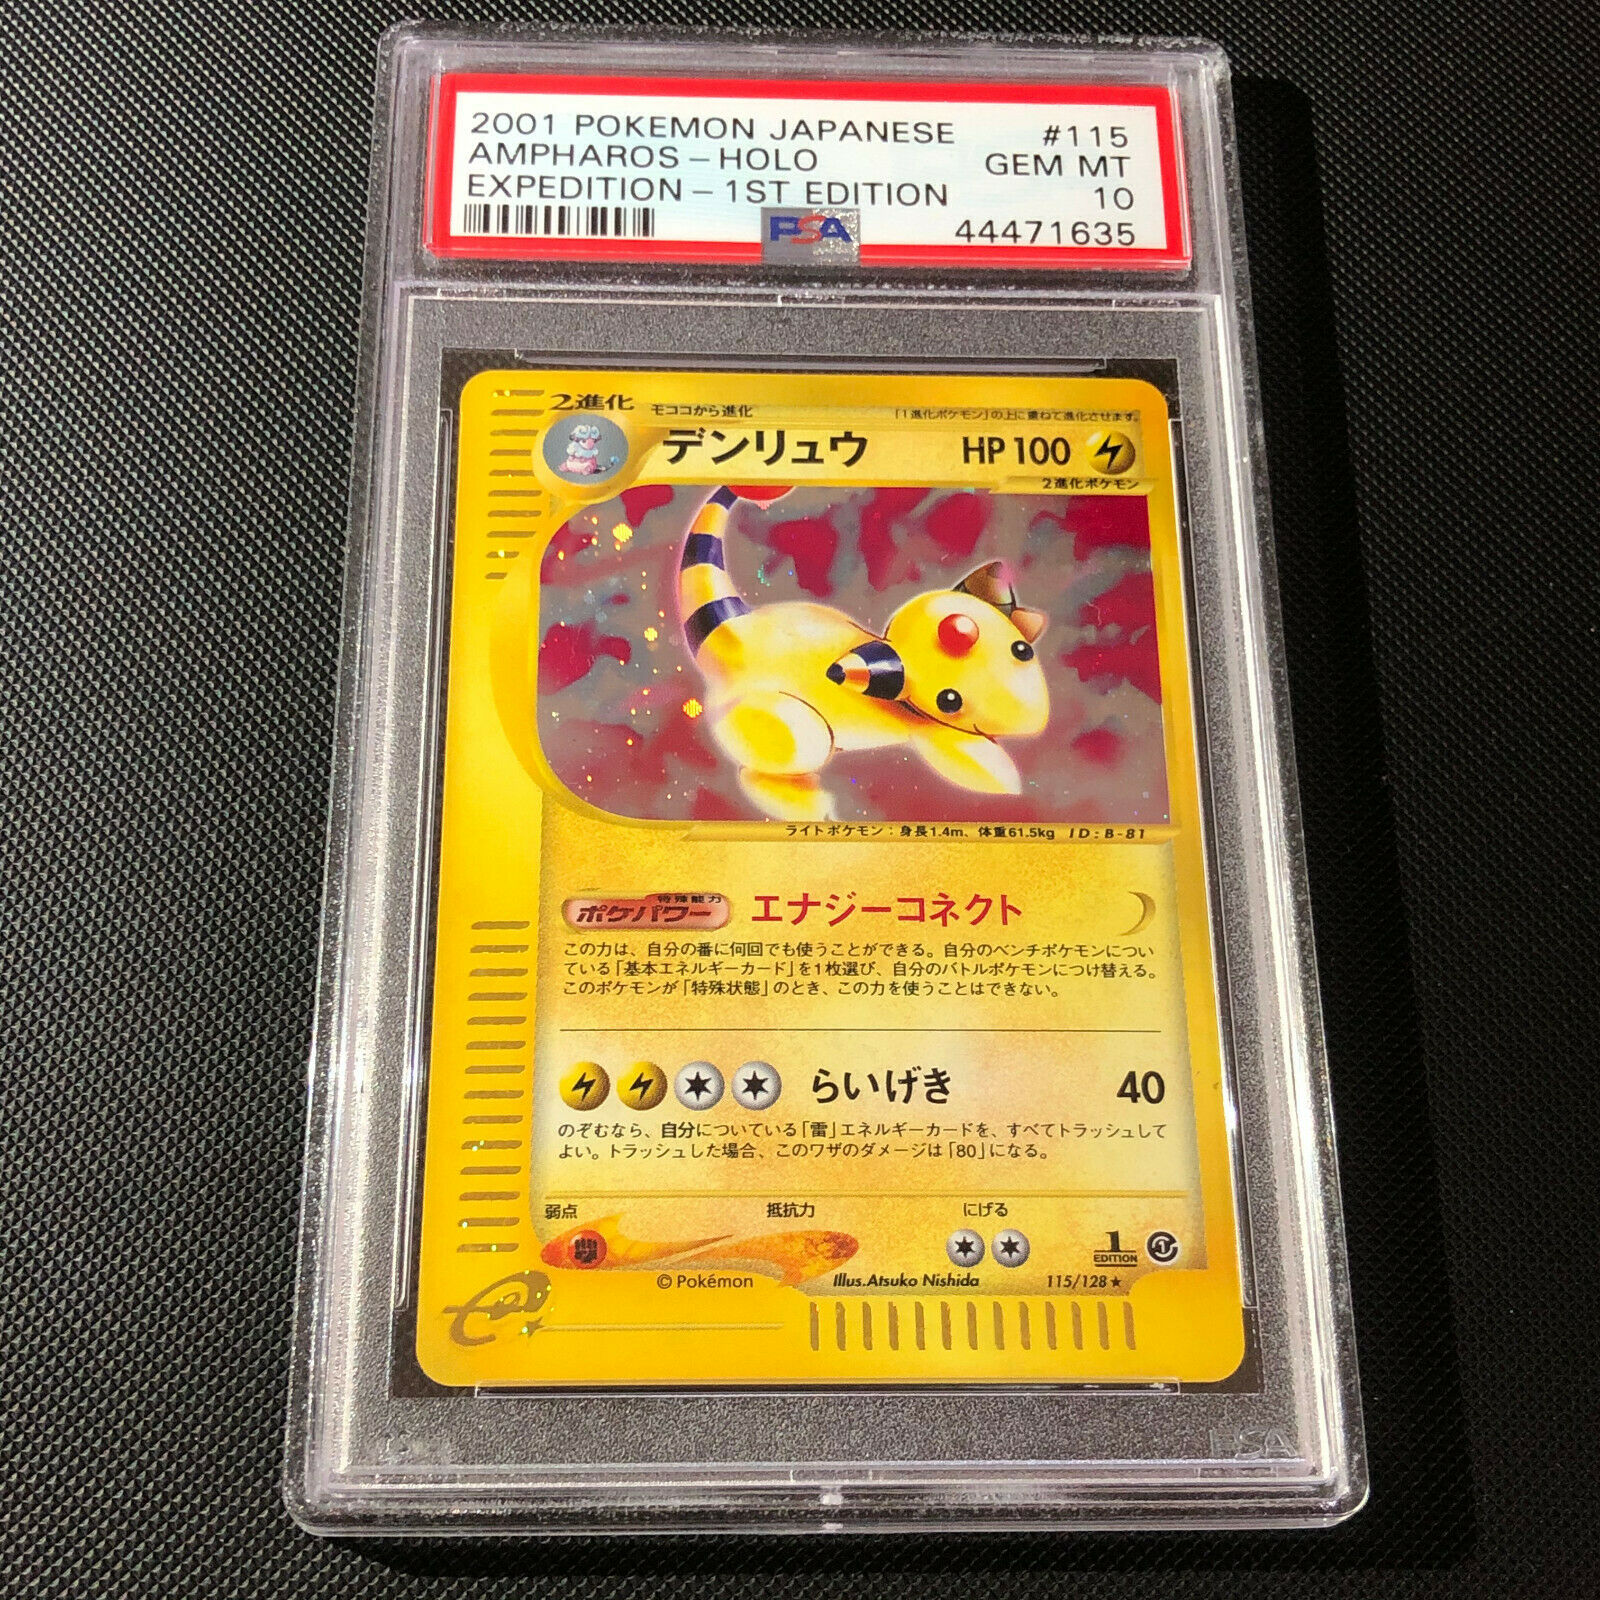 PSA 10  Japanese 1st ED Holo Ampharos Expedition Base 2001 115128 Pokemon Card